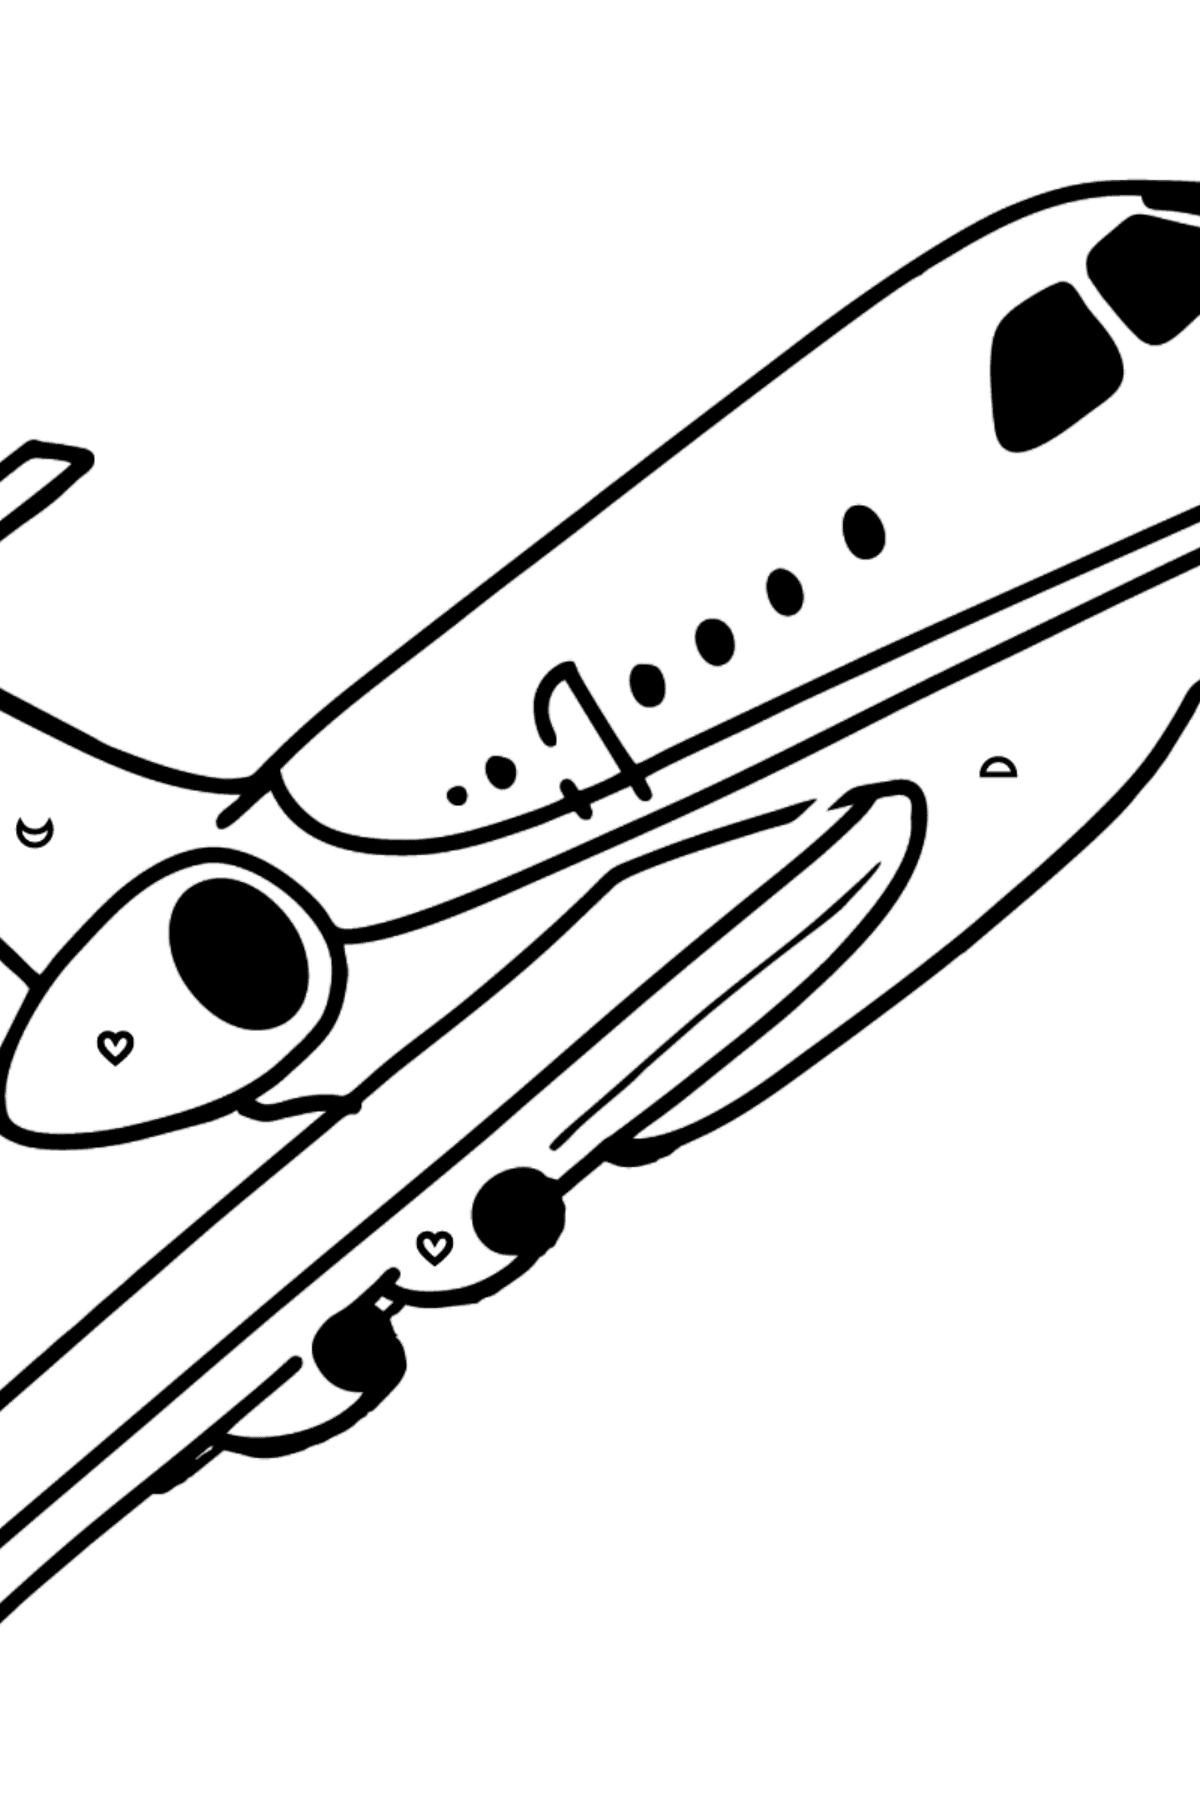 Dibujo de Avión Airbus para colorear - Colorear por Formas Geométricas para Niños